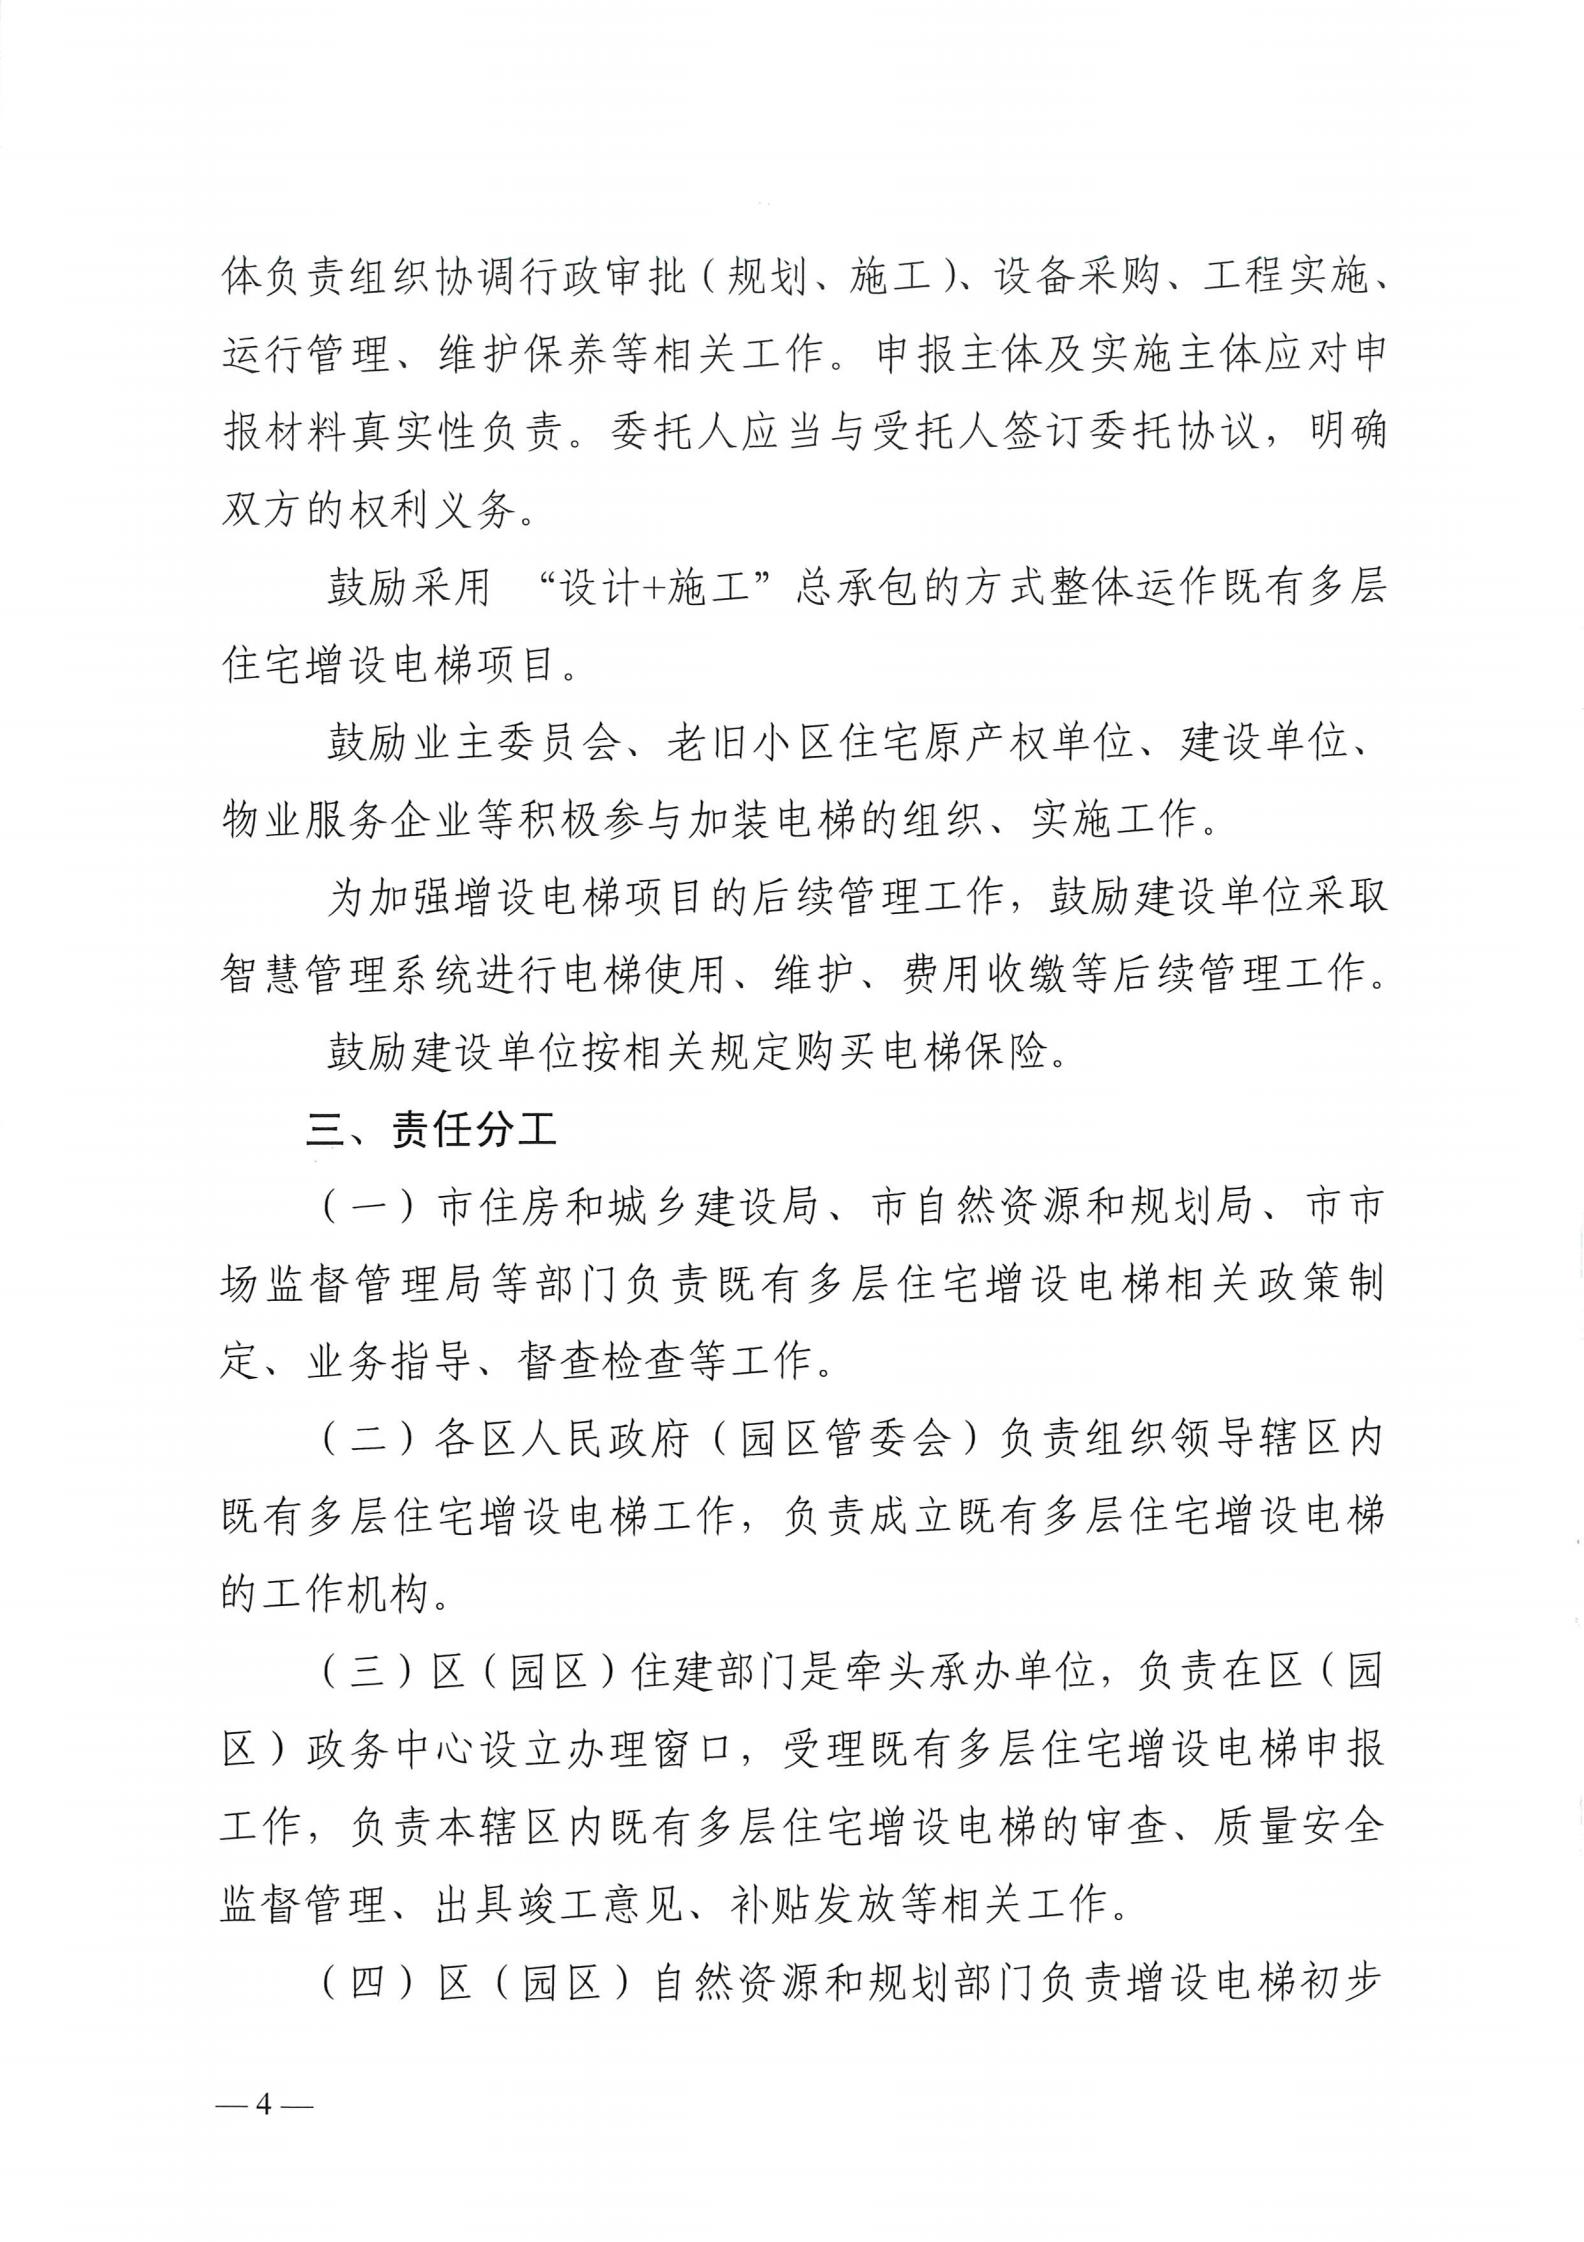 湘潭市六部门印发有关加装电梯的通知(图4)